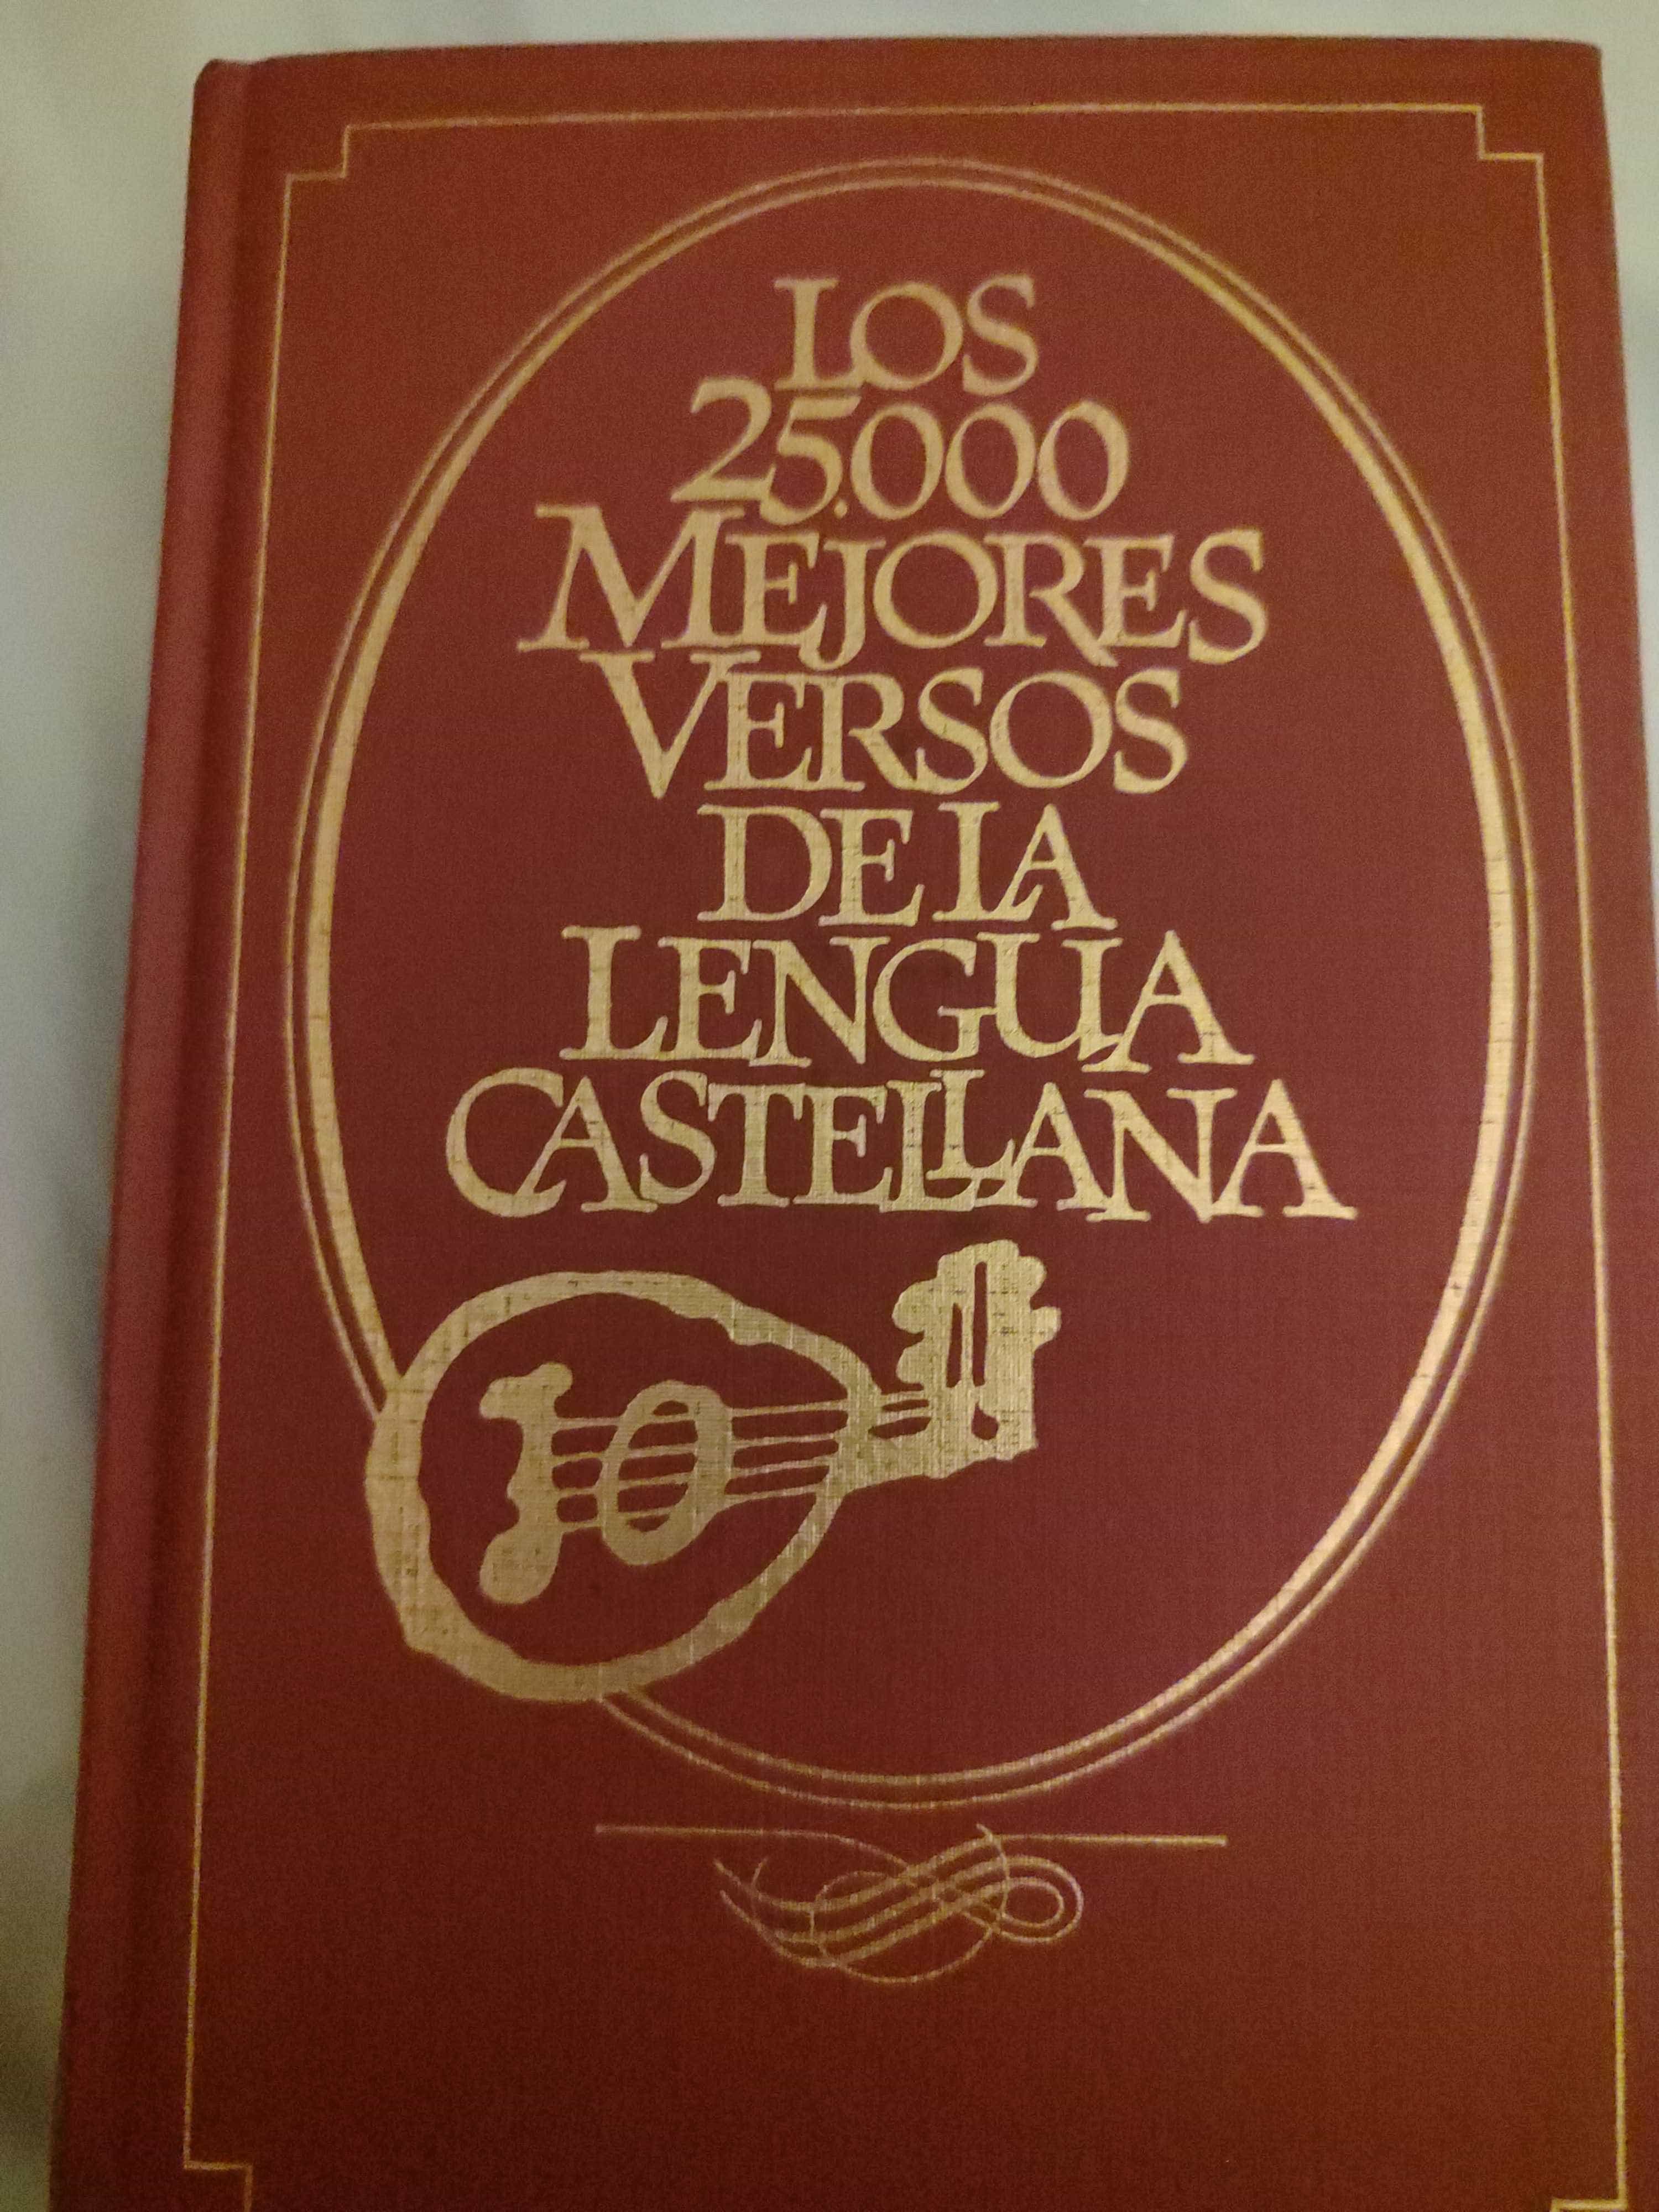 Libro de segunda mano: los 25.ooo mejores versos de la lengua castellana